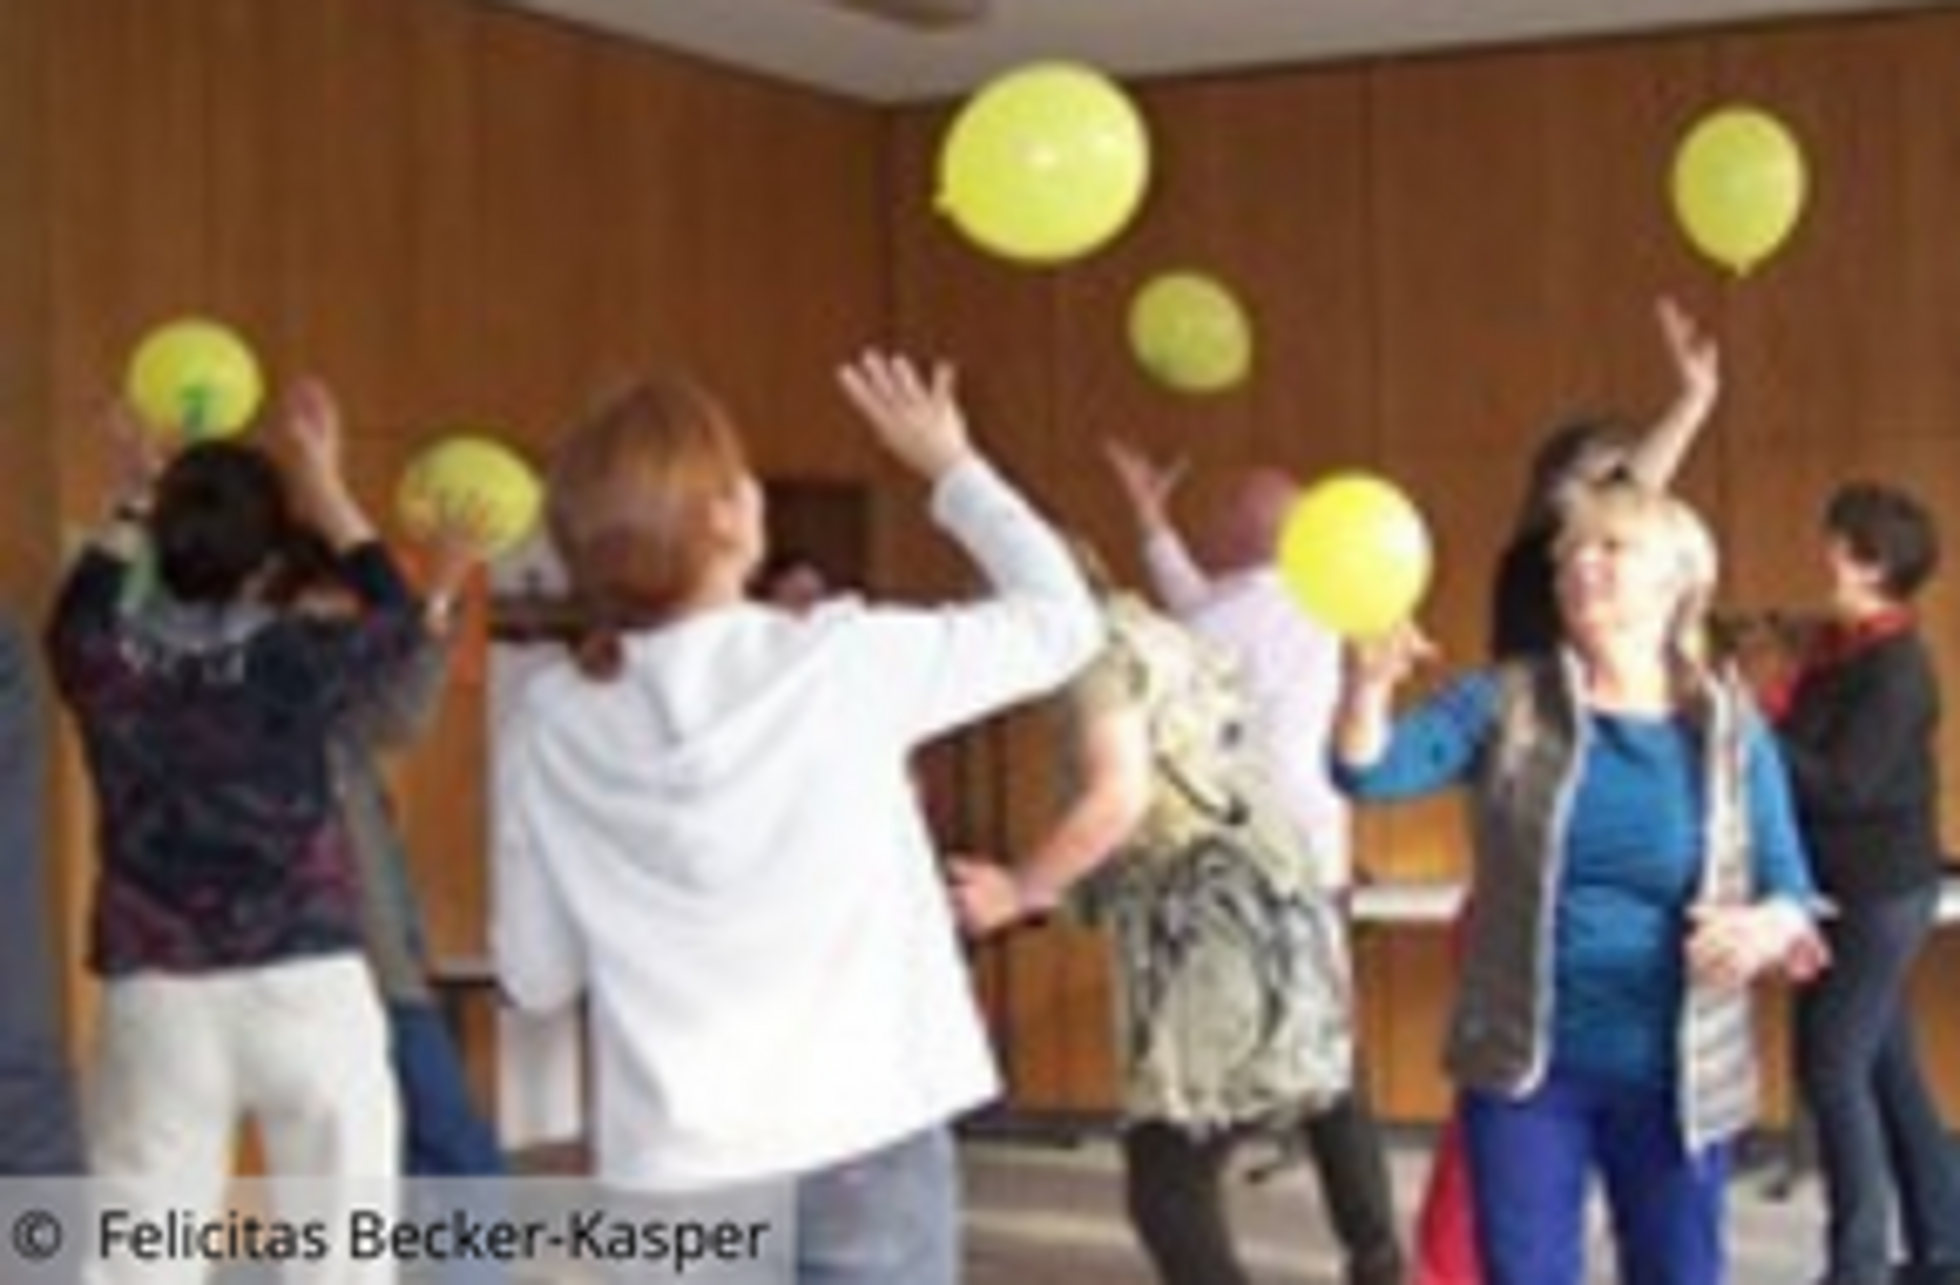 Gruppe spielt in einem Raum mit gelben Ballons